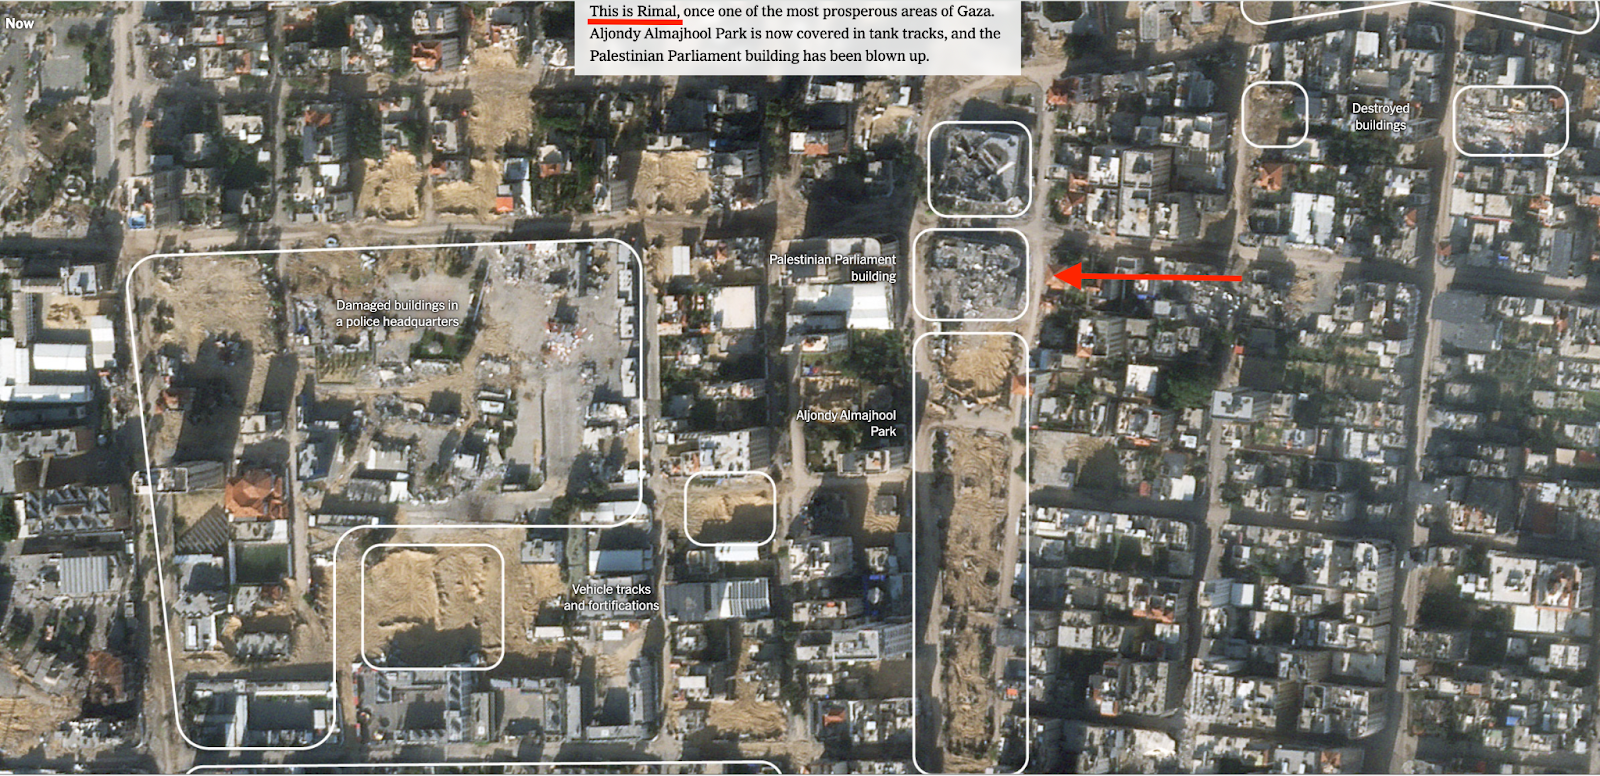 صورة أقمار صناعية تظهر حجم الدمار اللاحق بمبنى البرلمان الفلسطيني في غزة ومحيطه في حي الرمال